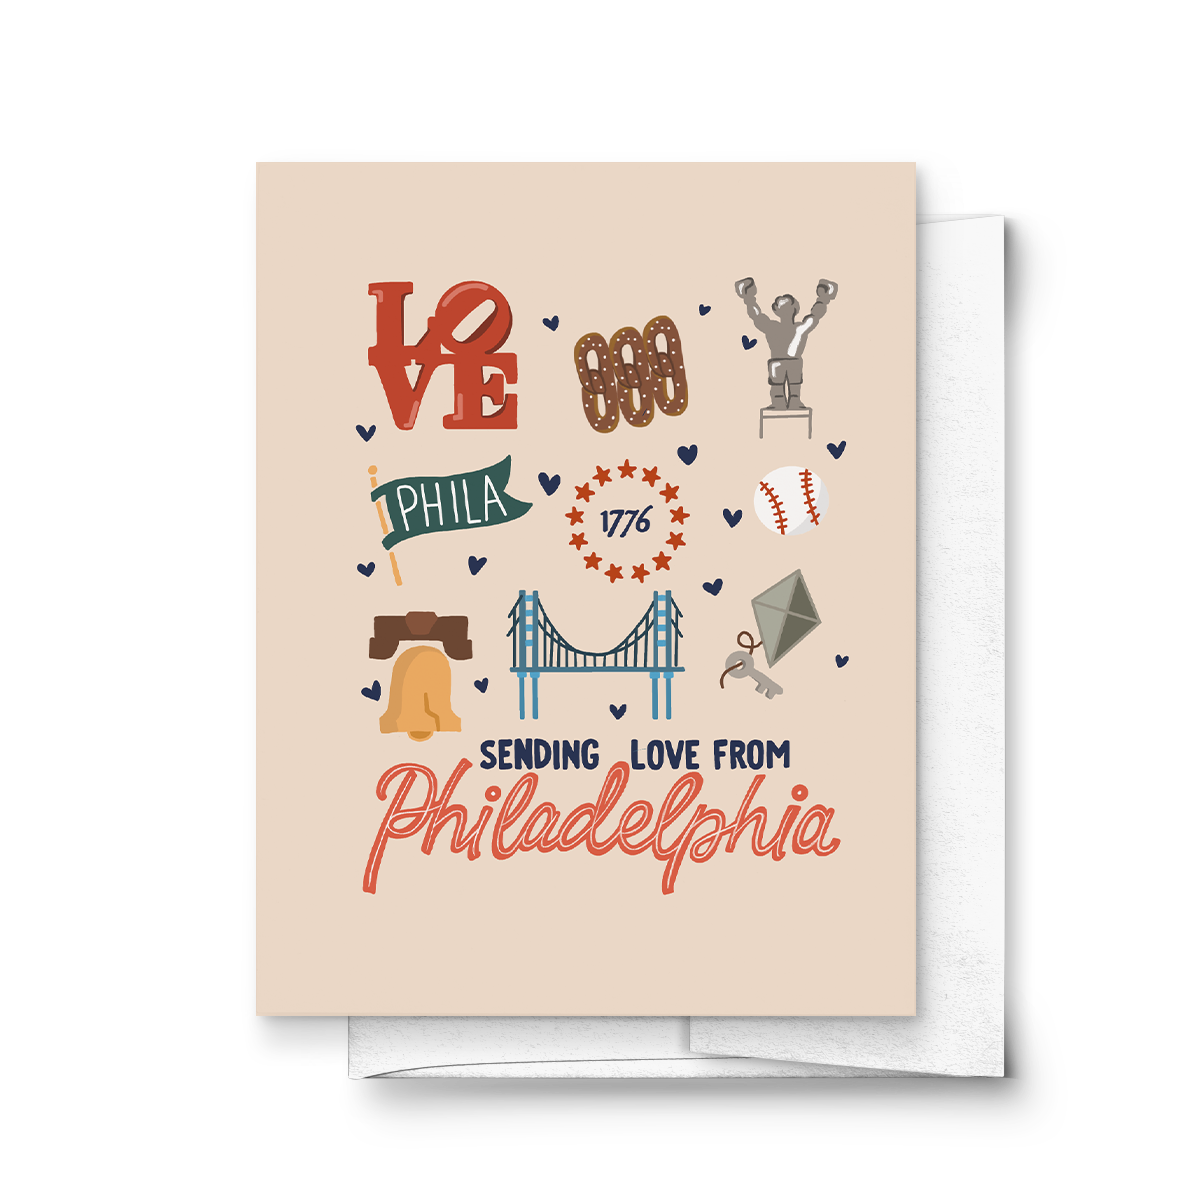 Sending Love from Philadelphia Pennsylvania, Greeting Card